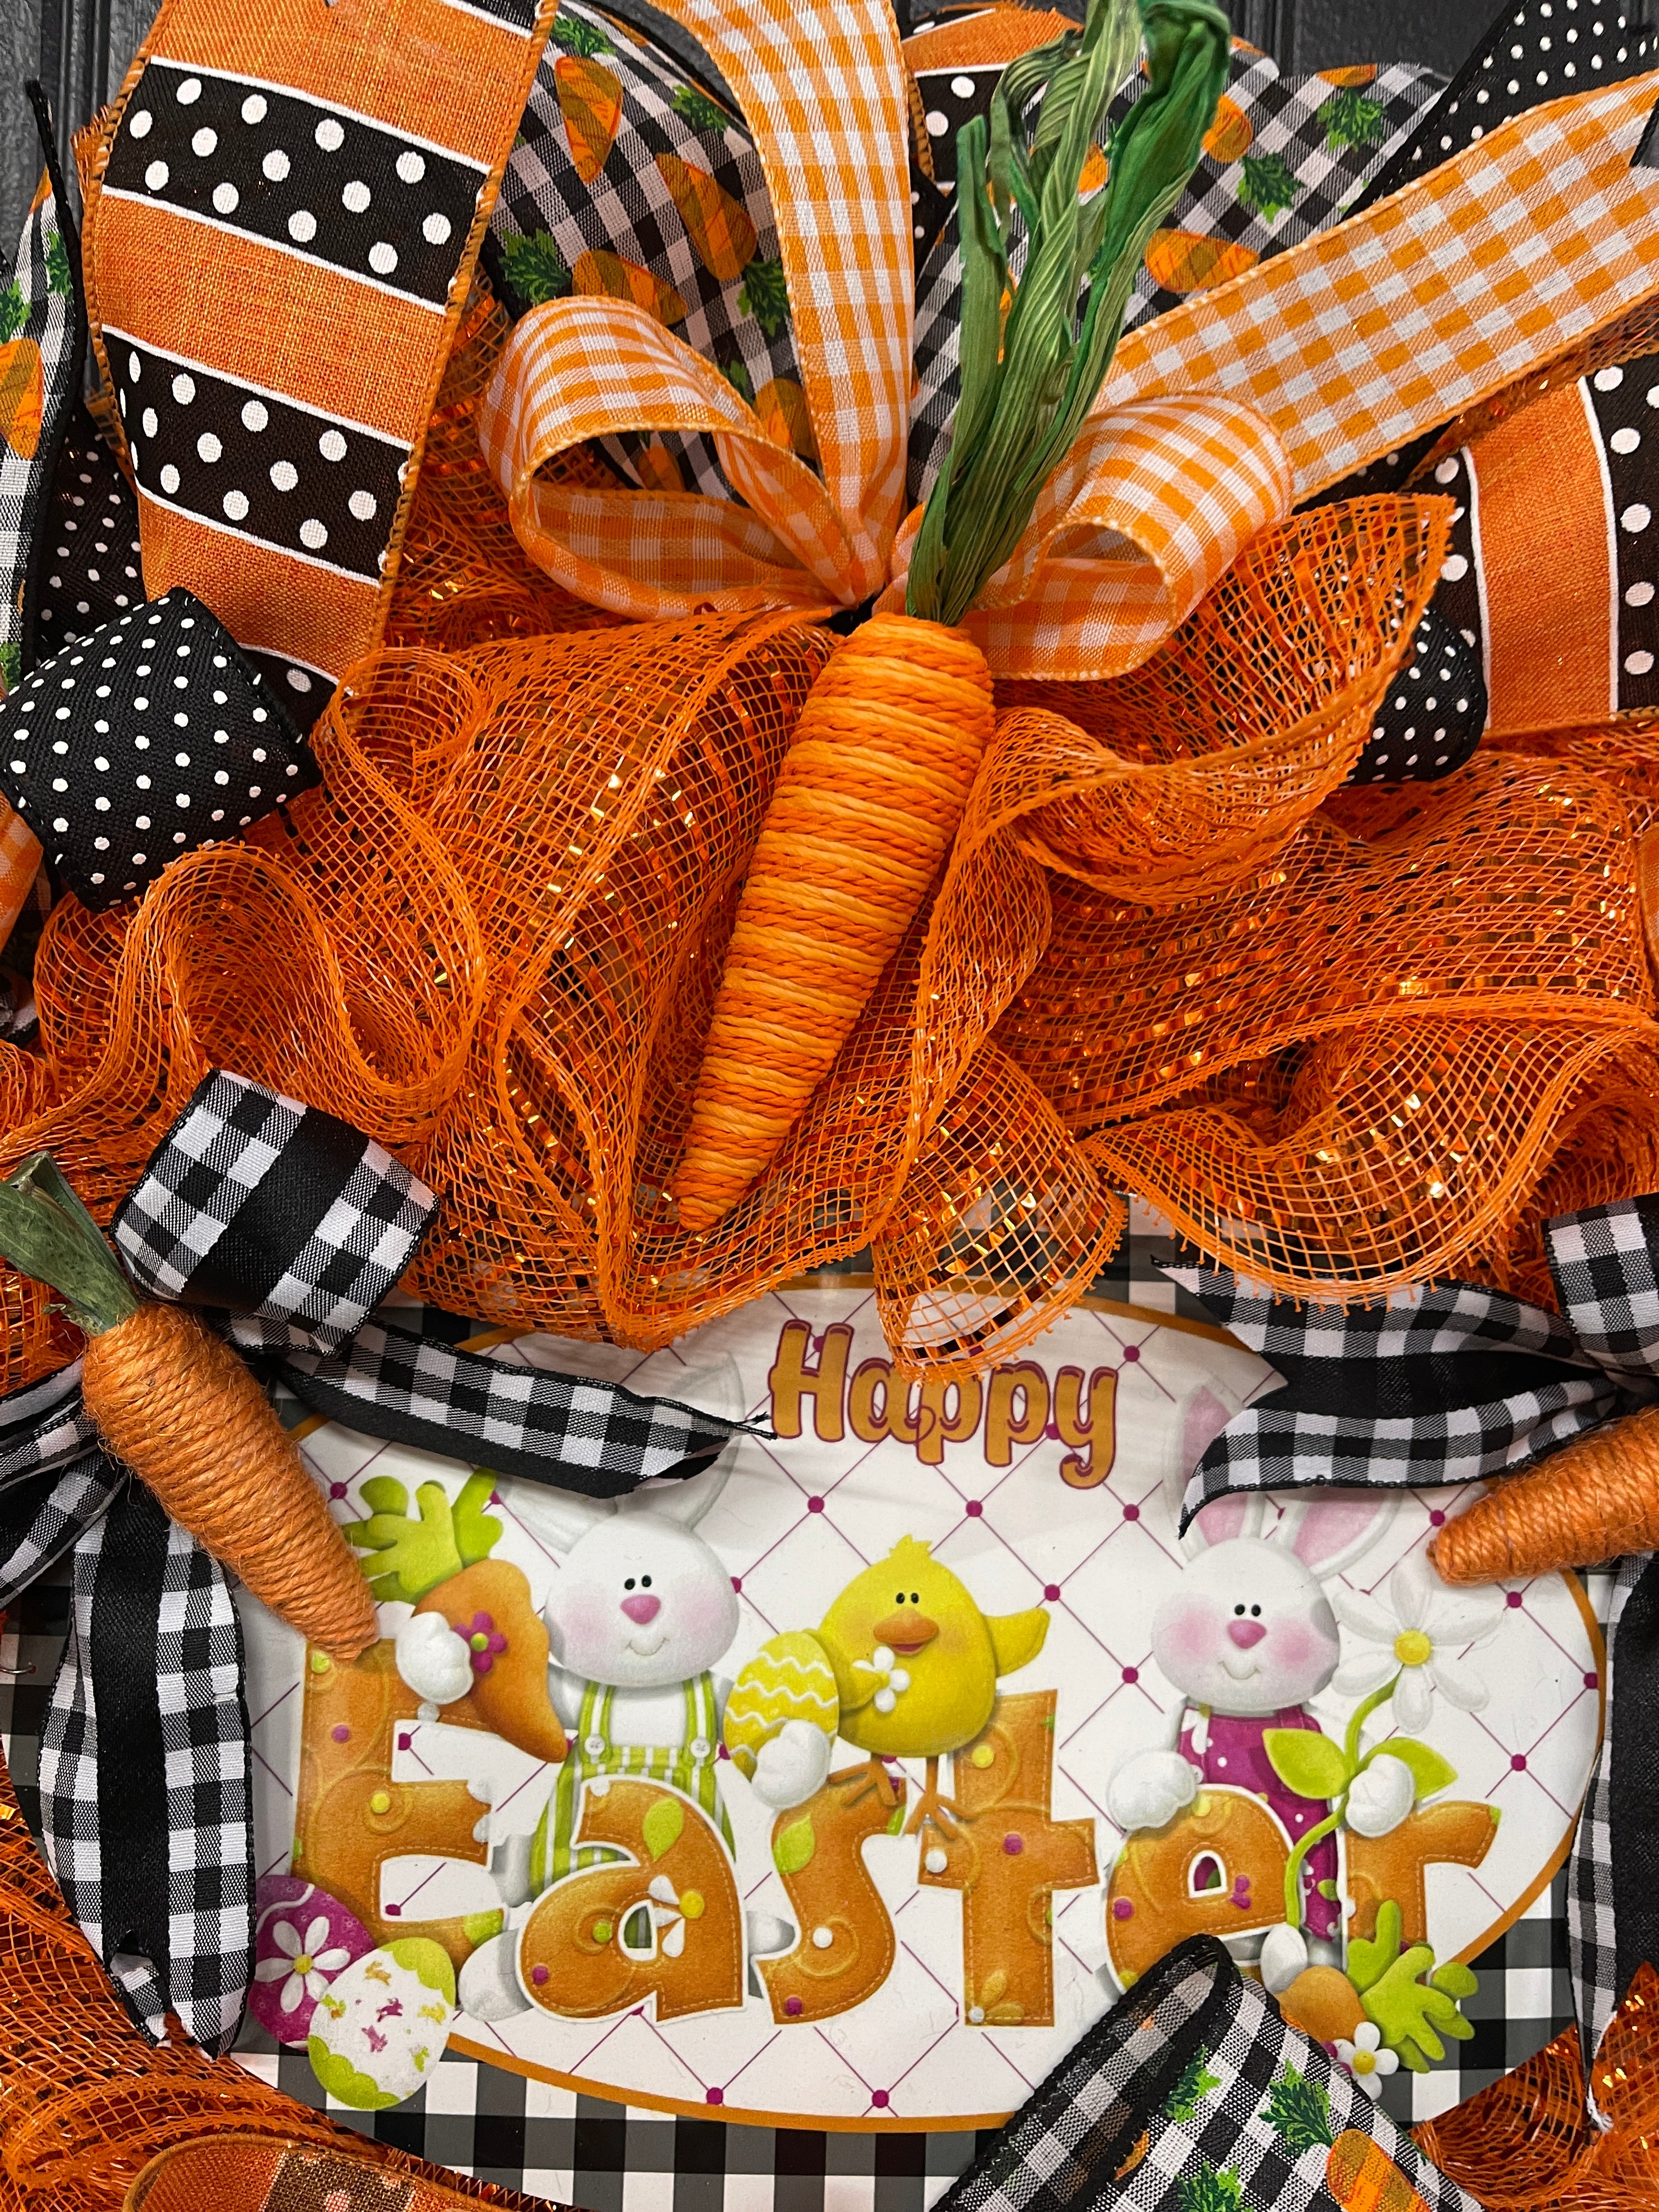 Happy Easter Carrot Wreath, Spring Front Door Decor, KatsCreationsNMore